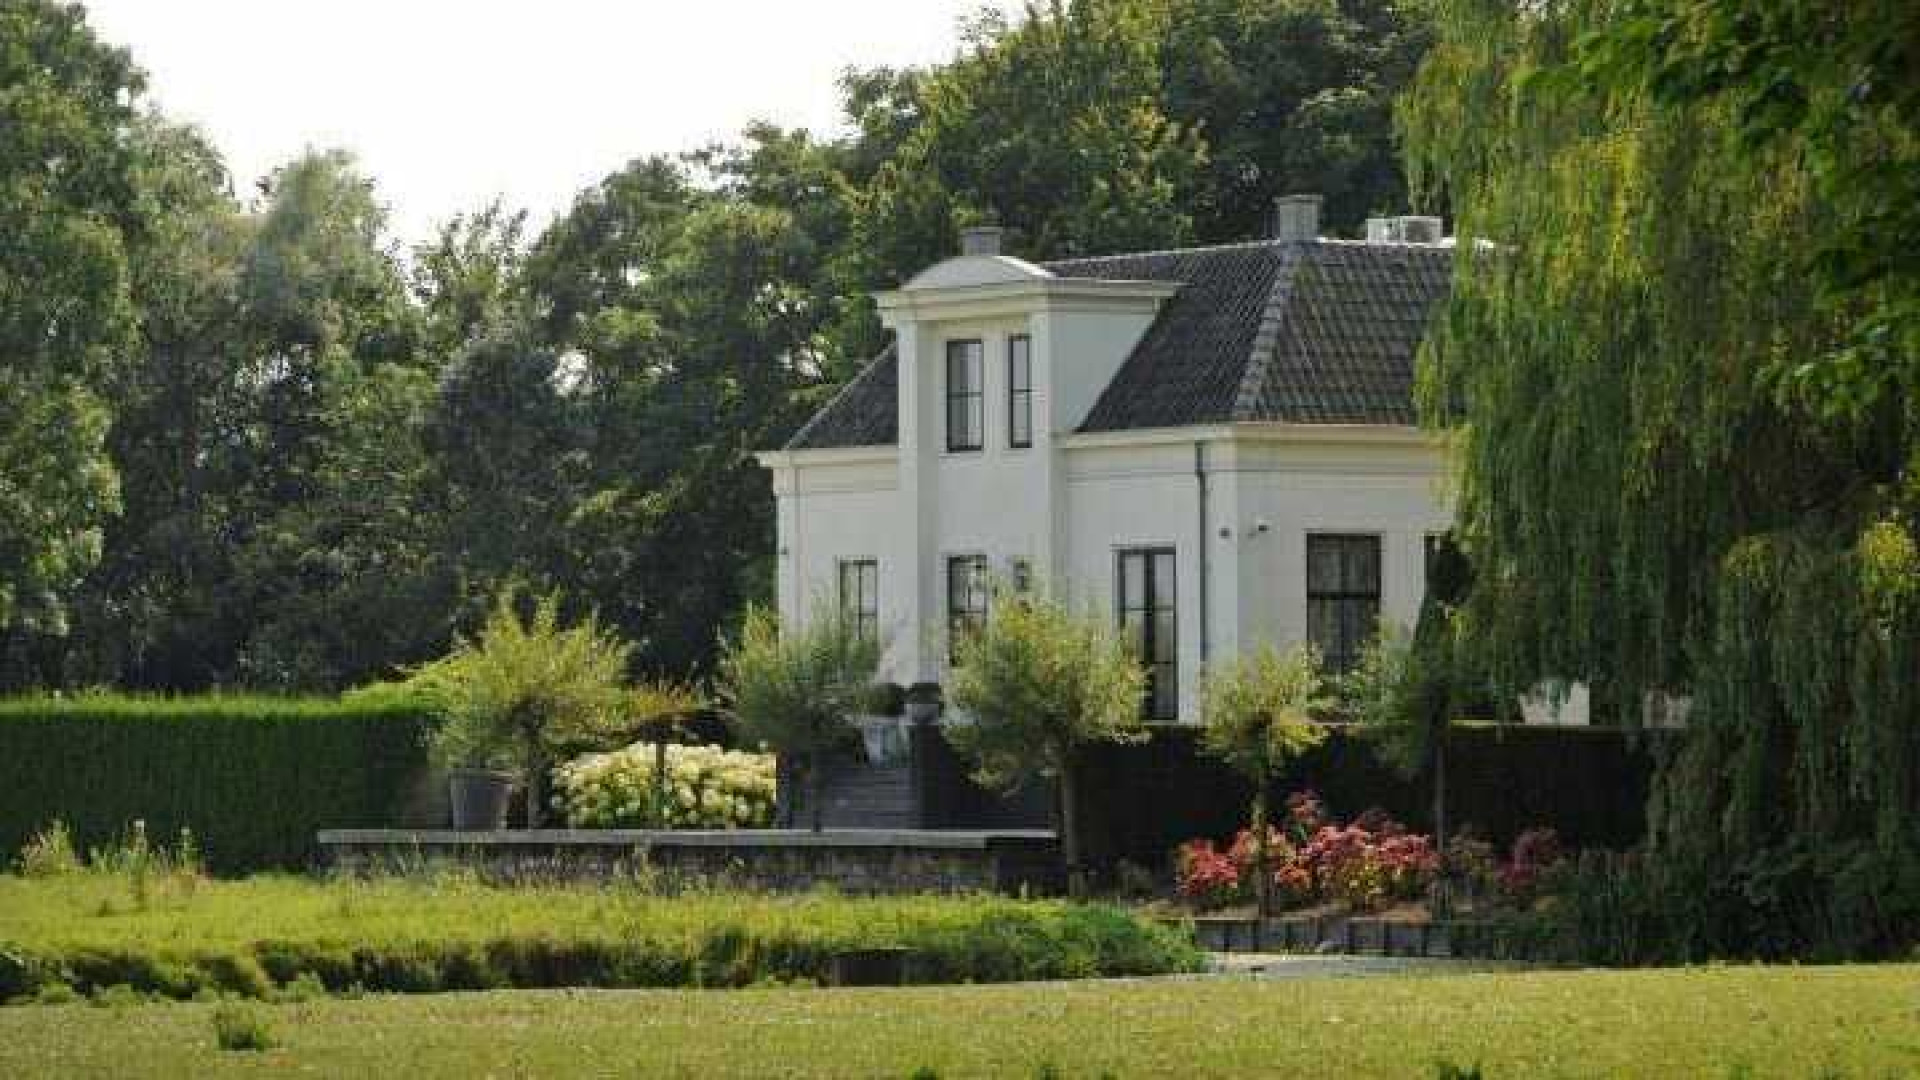 Sonja Bakker zet haar schitterende landhuis te koop. Zie foto's